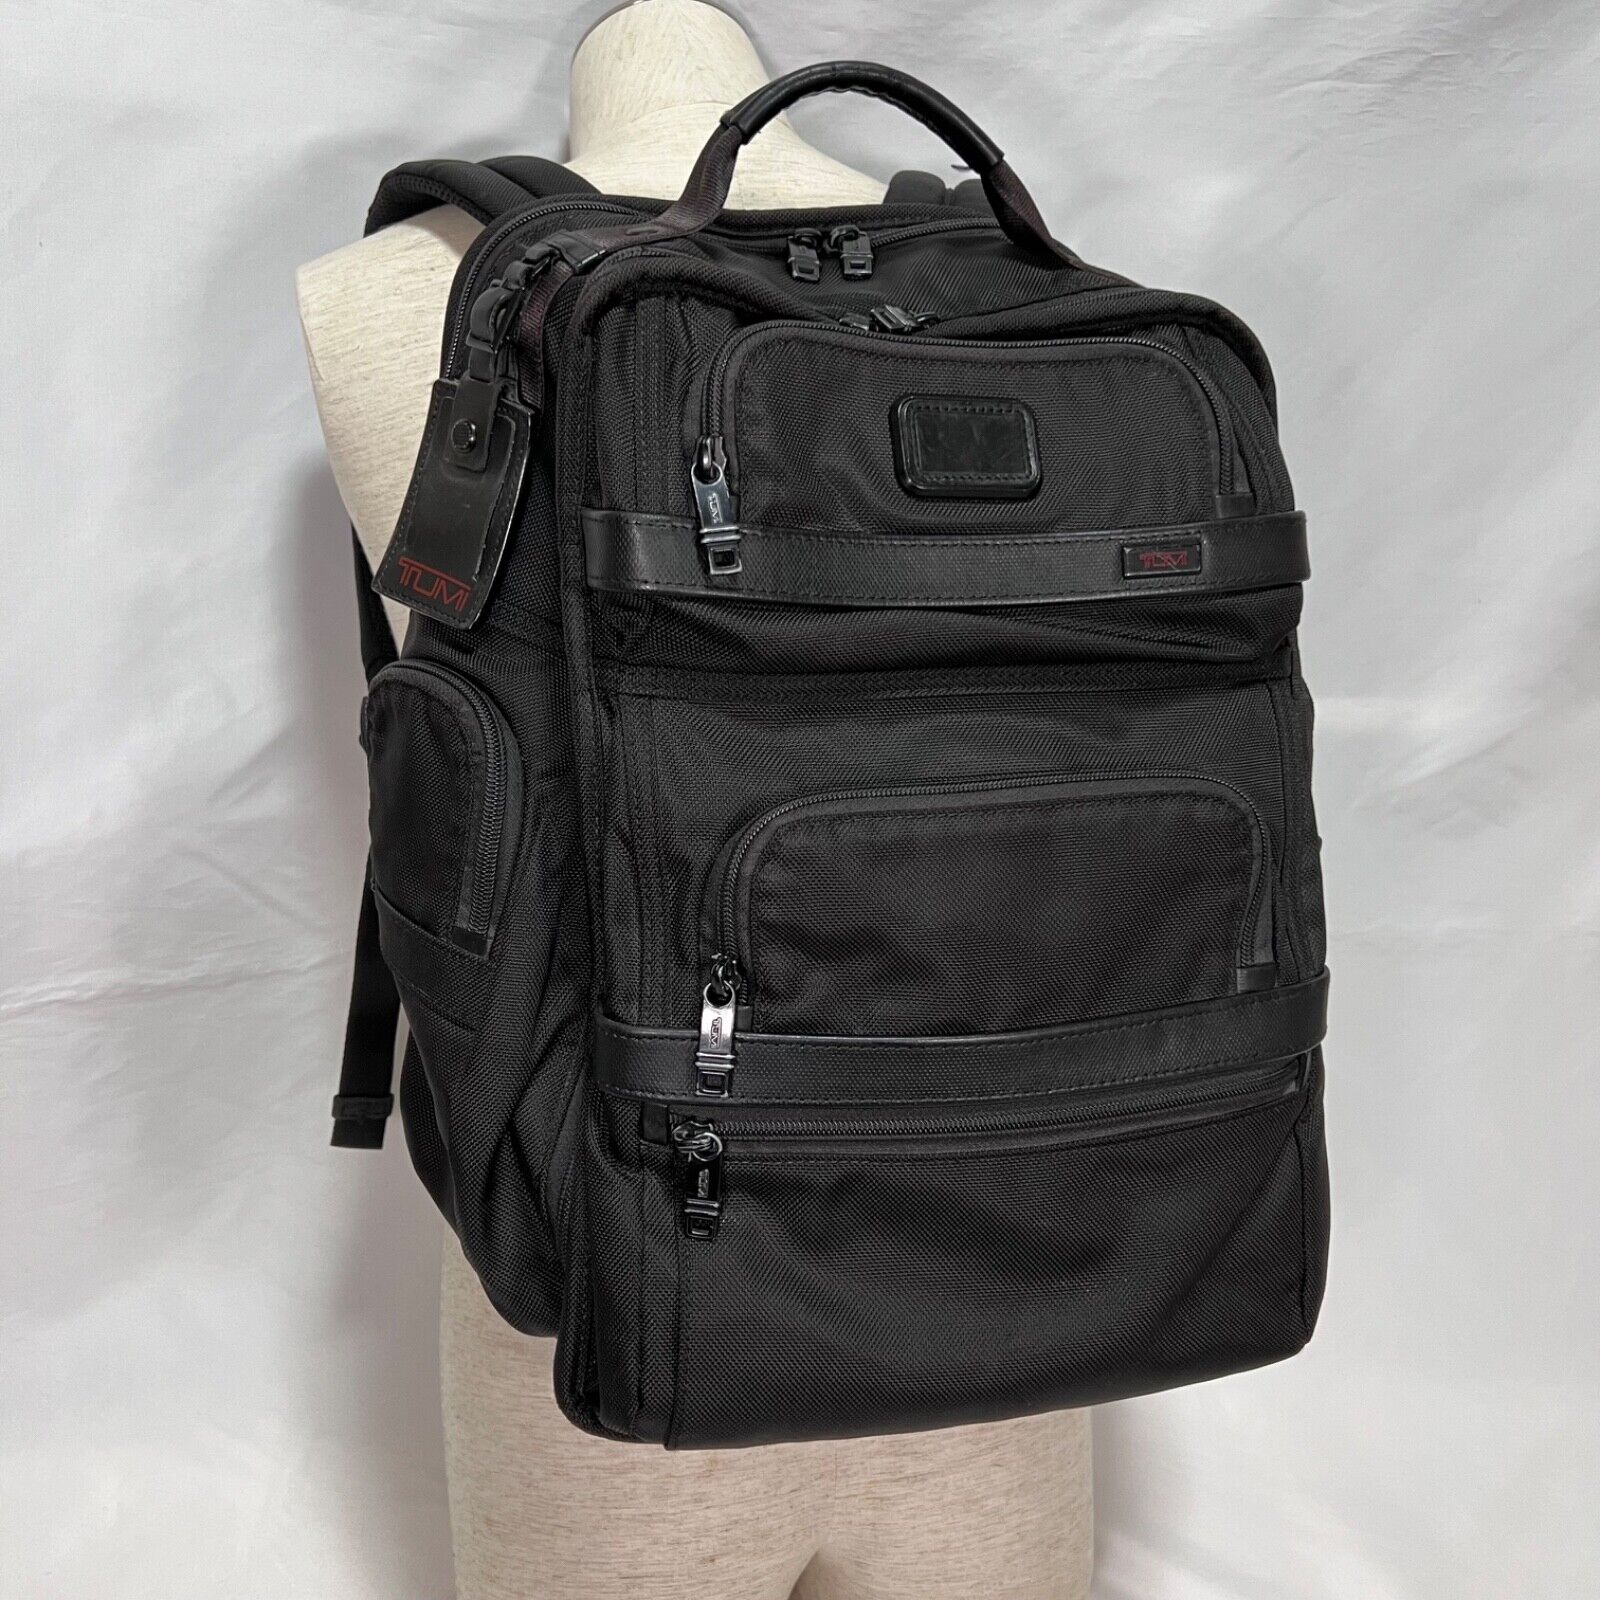 Wordt erger Afstotend verlangen TUMI 26578D2 ALPHA 2 T-Pass Business Class Briefpack Backpack | eBay